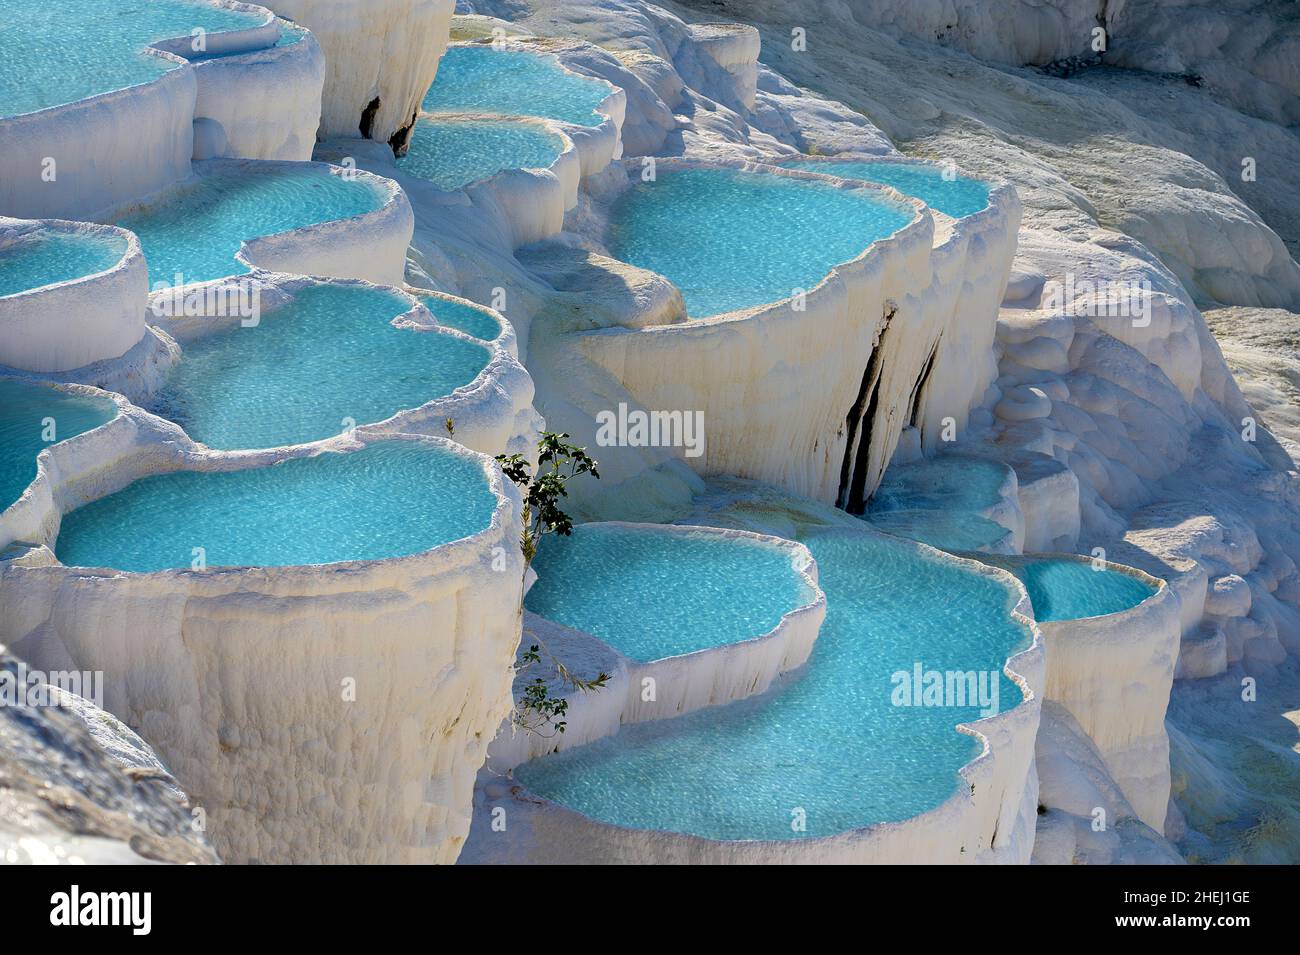 Piscinas de travertino de aguas termales de Pamukkale, Turquía. Las terrazas de Pamukkale están hechas de travertino, una roca sedimentaria depositada por agua mineral del calor Foto de stock